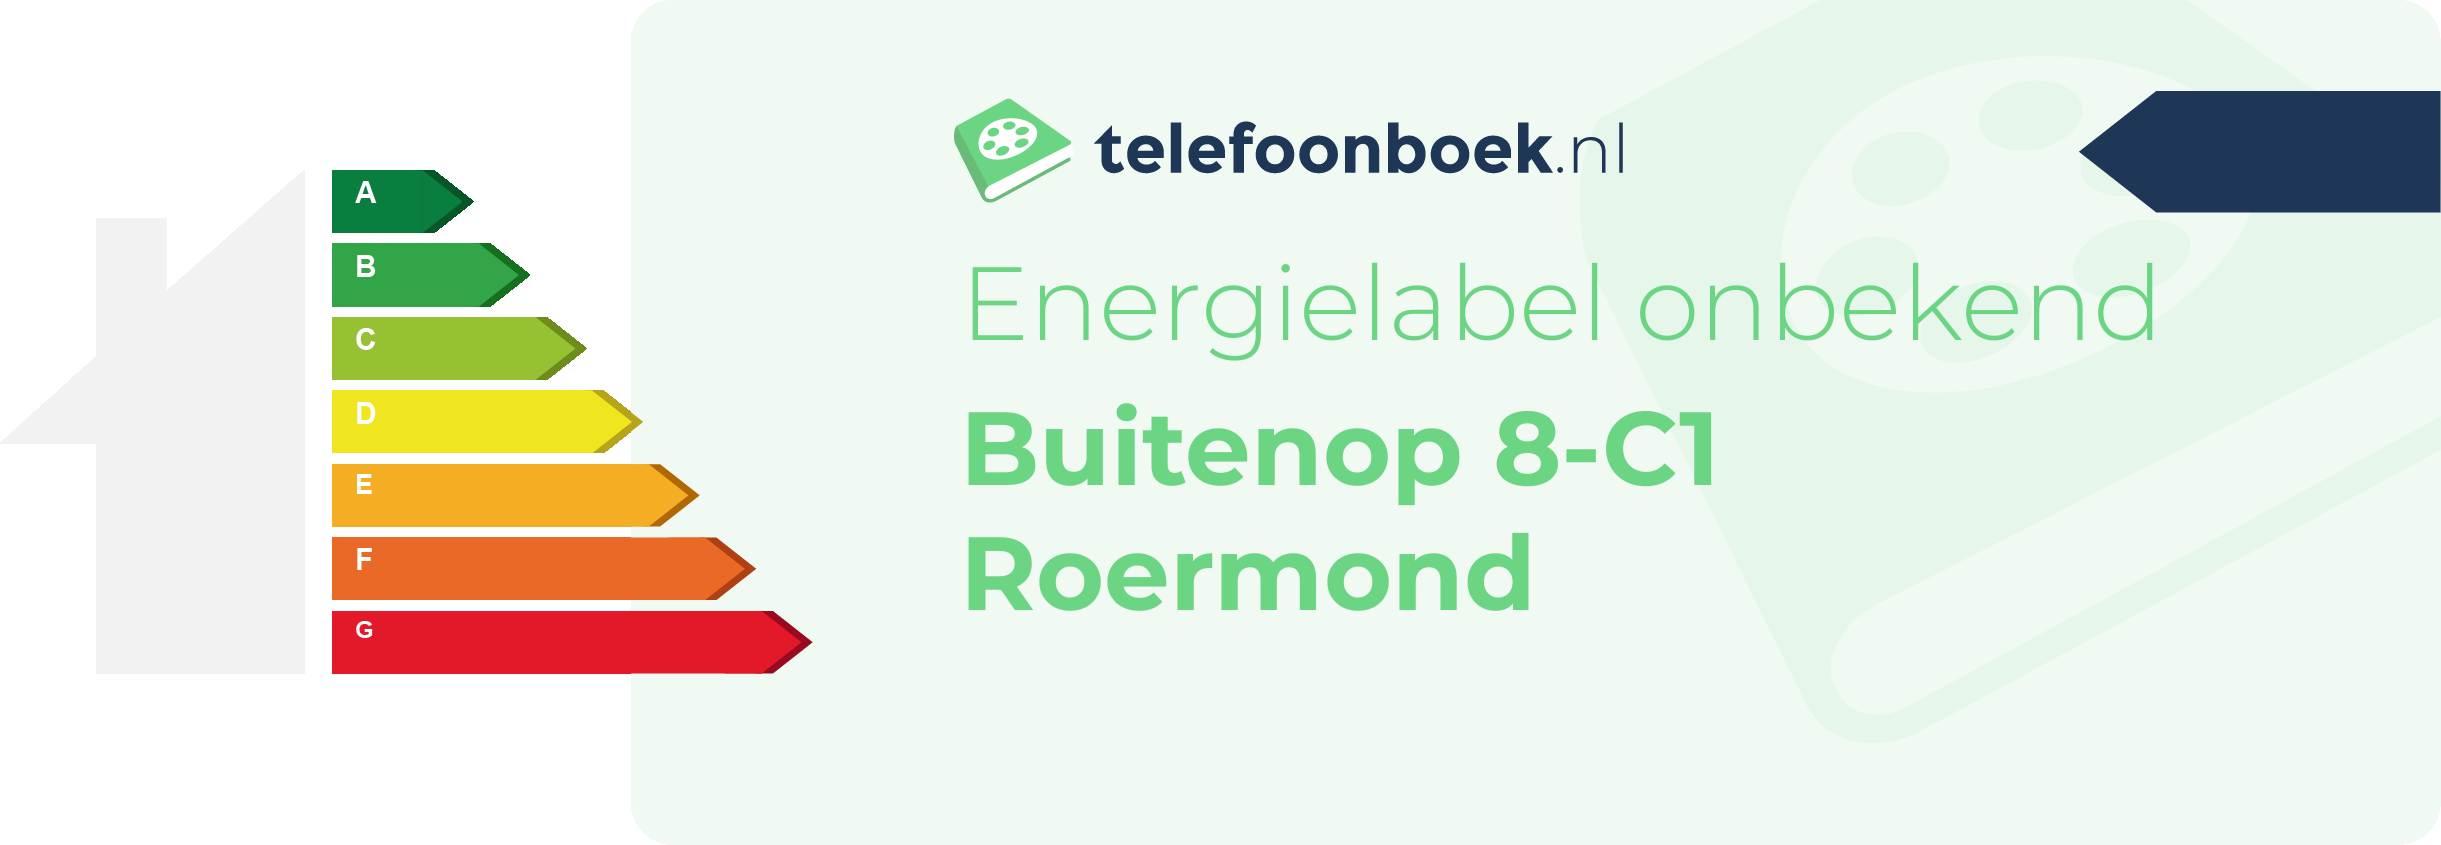 Energielabel Buitenop 8-C1 Roermond